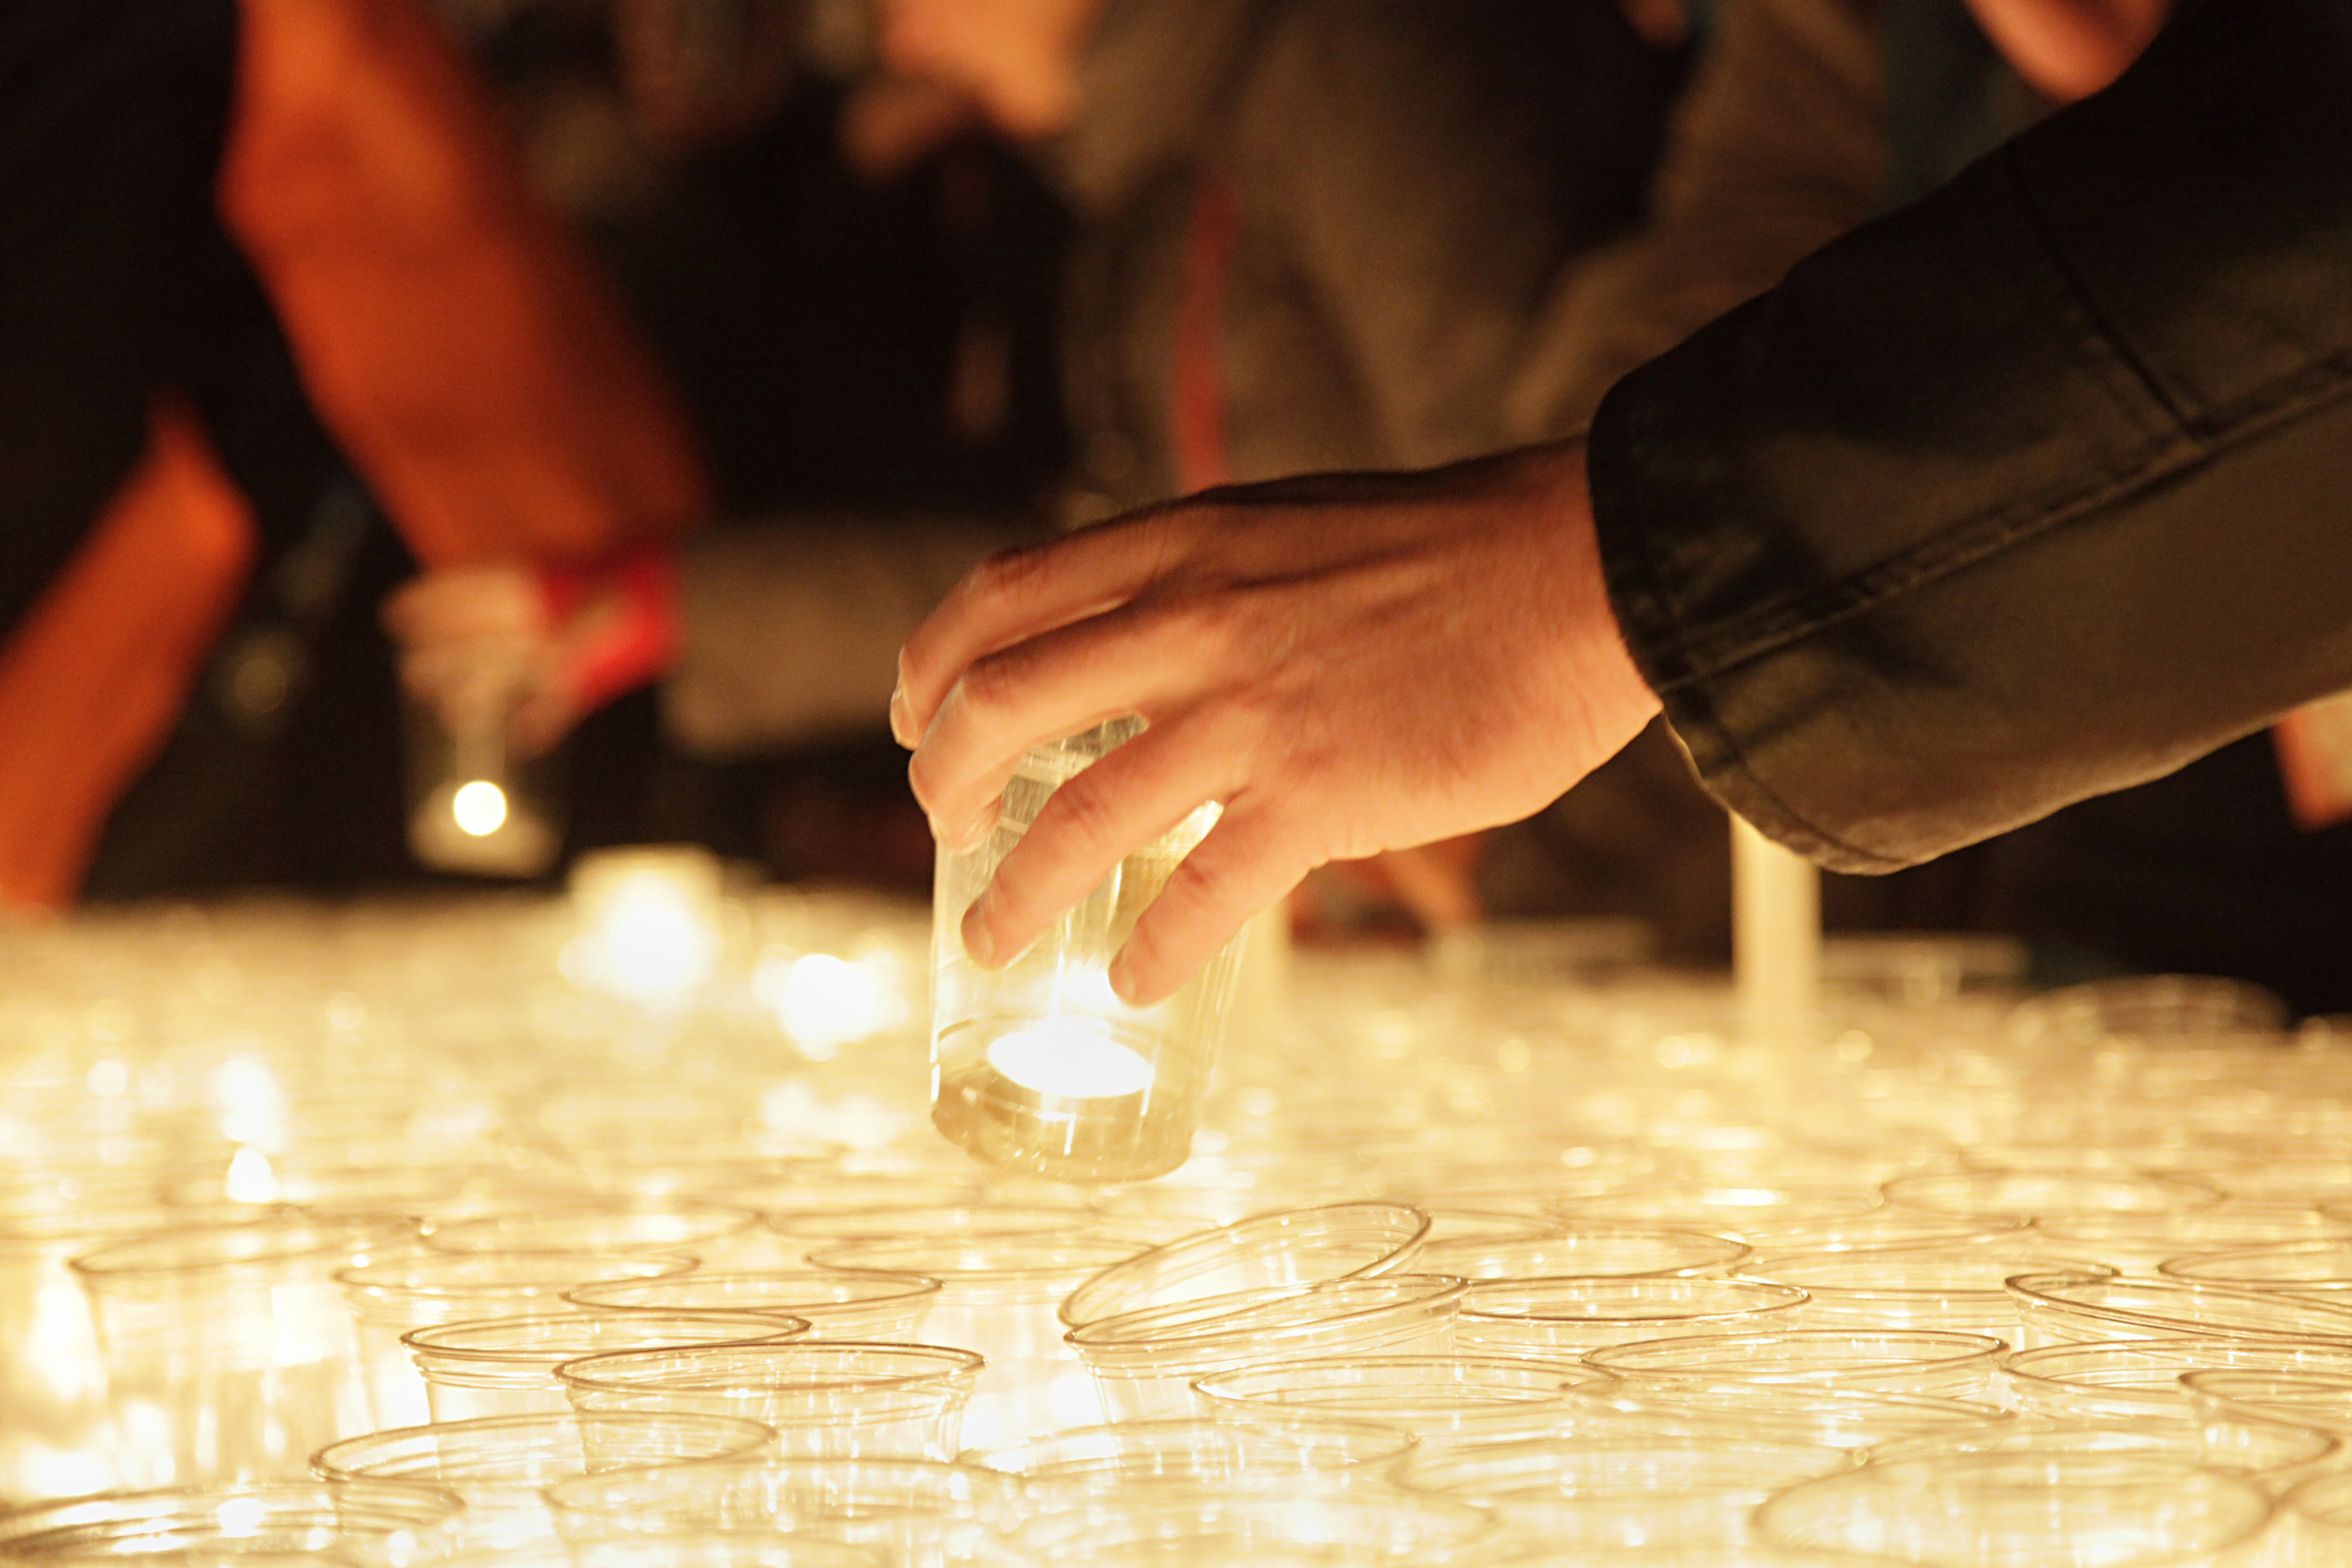   Ein Lichtfest zum Selbermachen | Trotz Pandemie findet das alljährliche Gedenken statt - im kleineren Rahmen  